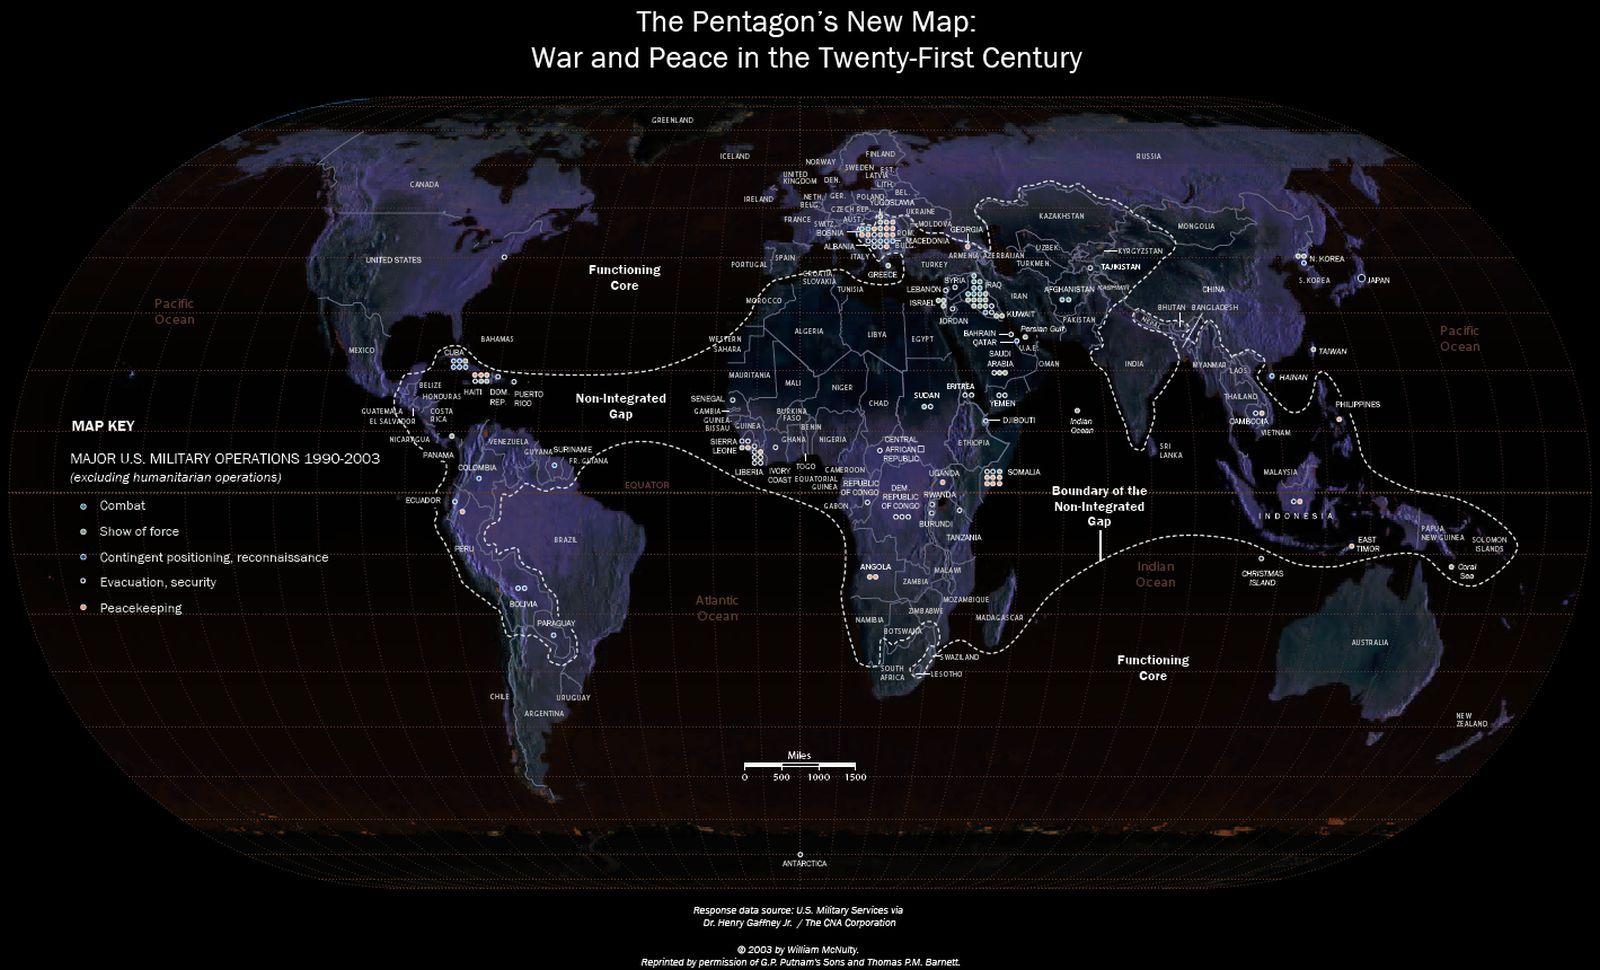 World Map Wallpaper HD